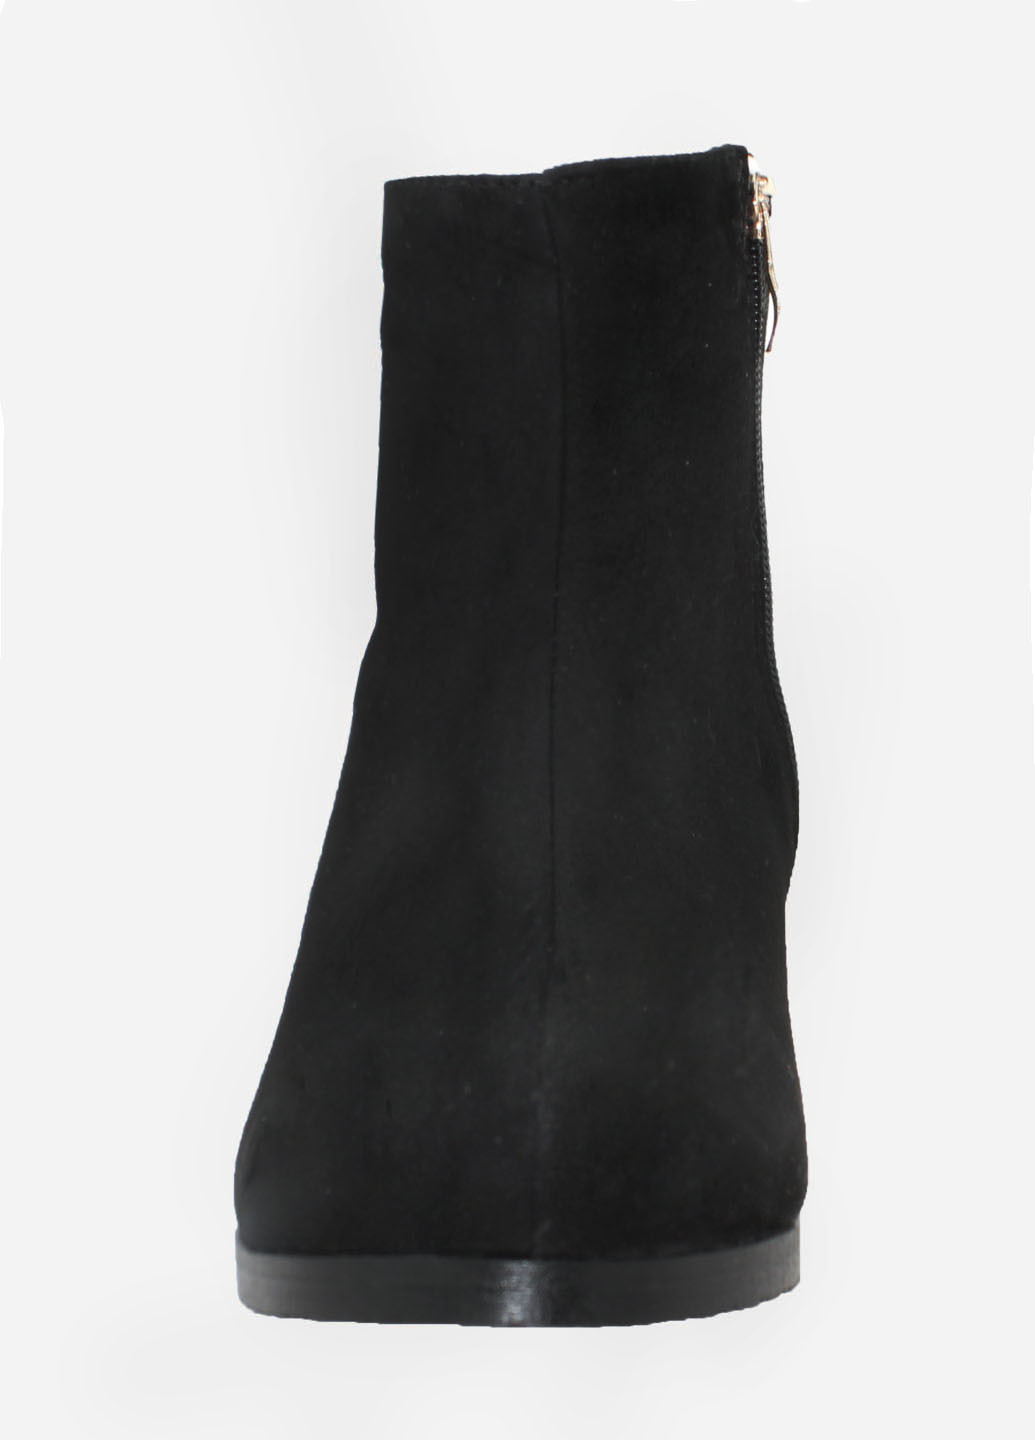 Зимние ботинки rf756-11 черный Foletti из натуральной замши